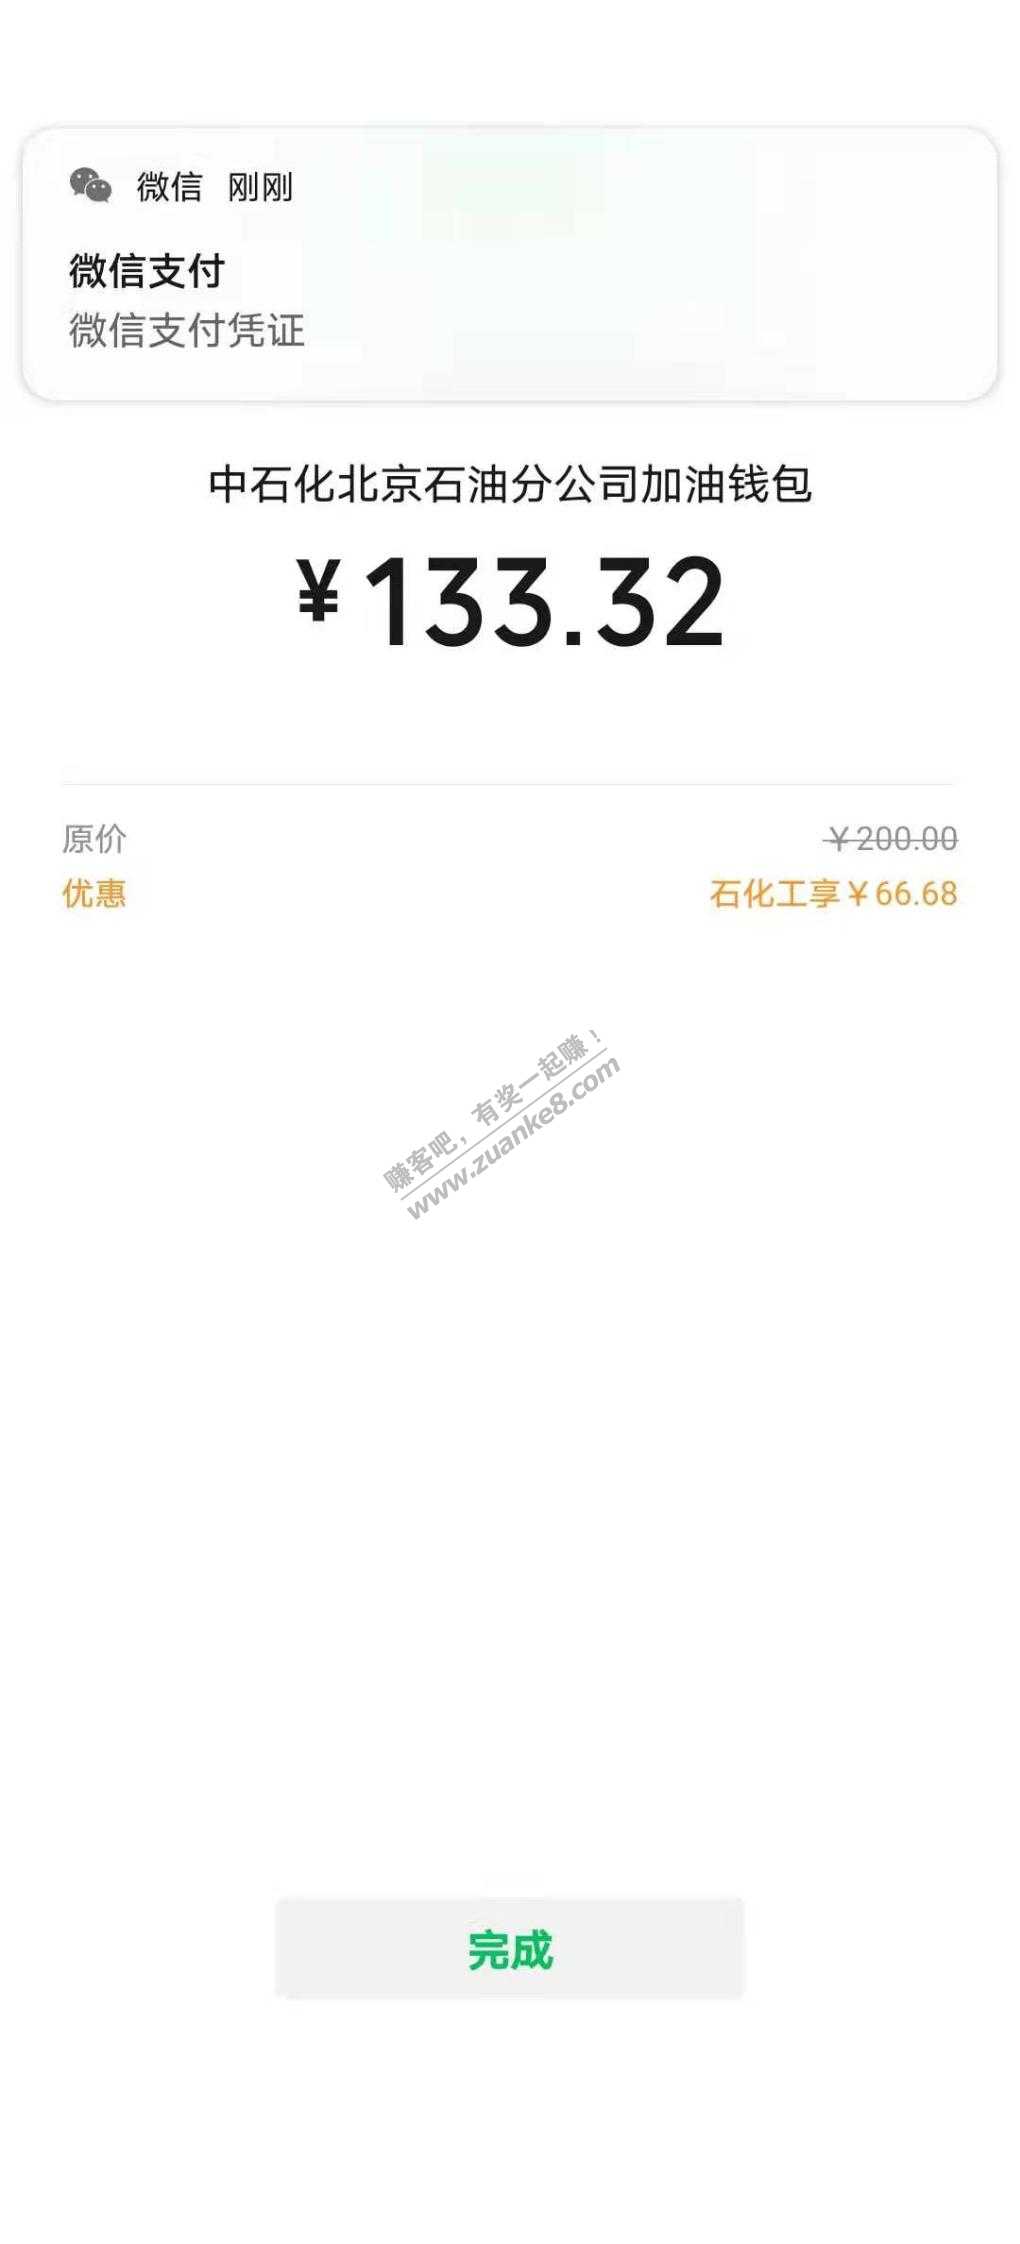 中国石化钱包充值可叠加200-30等详细办法和今天大水-95元-惠小助(52huixz.com)